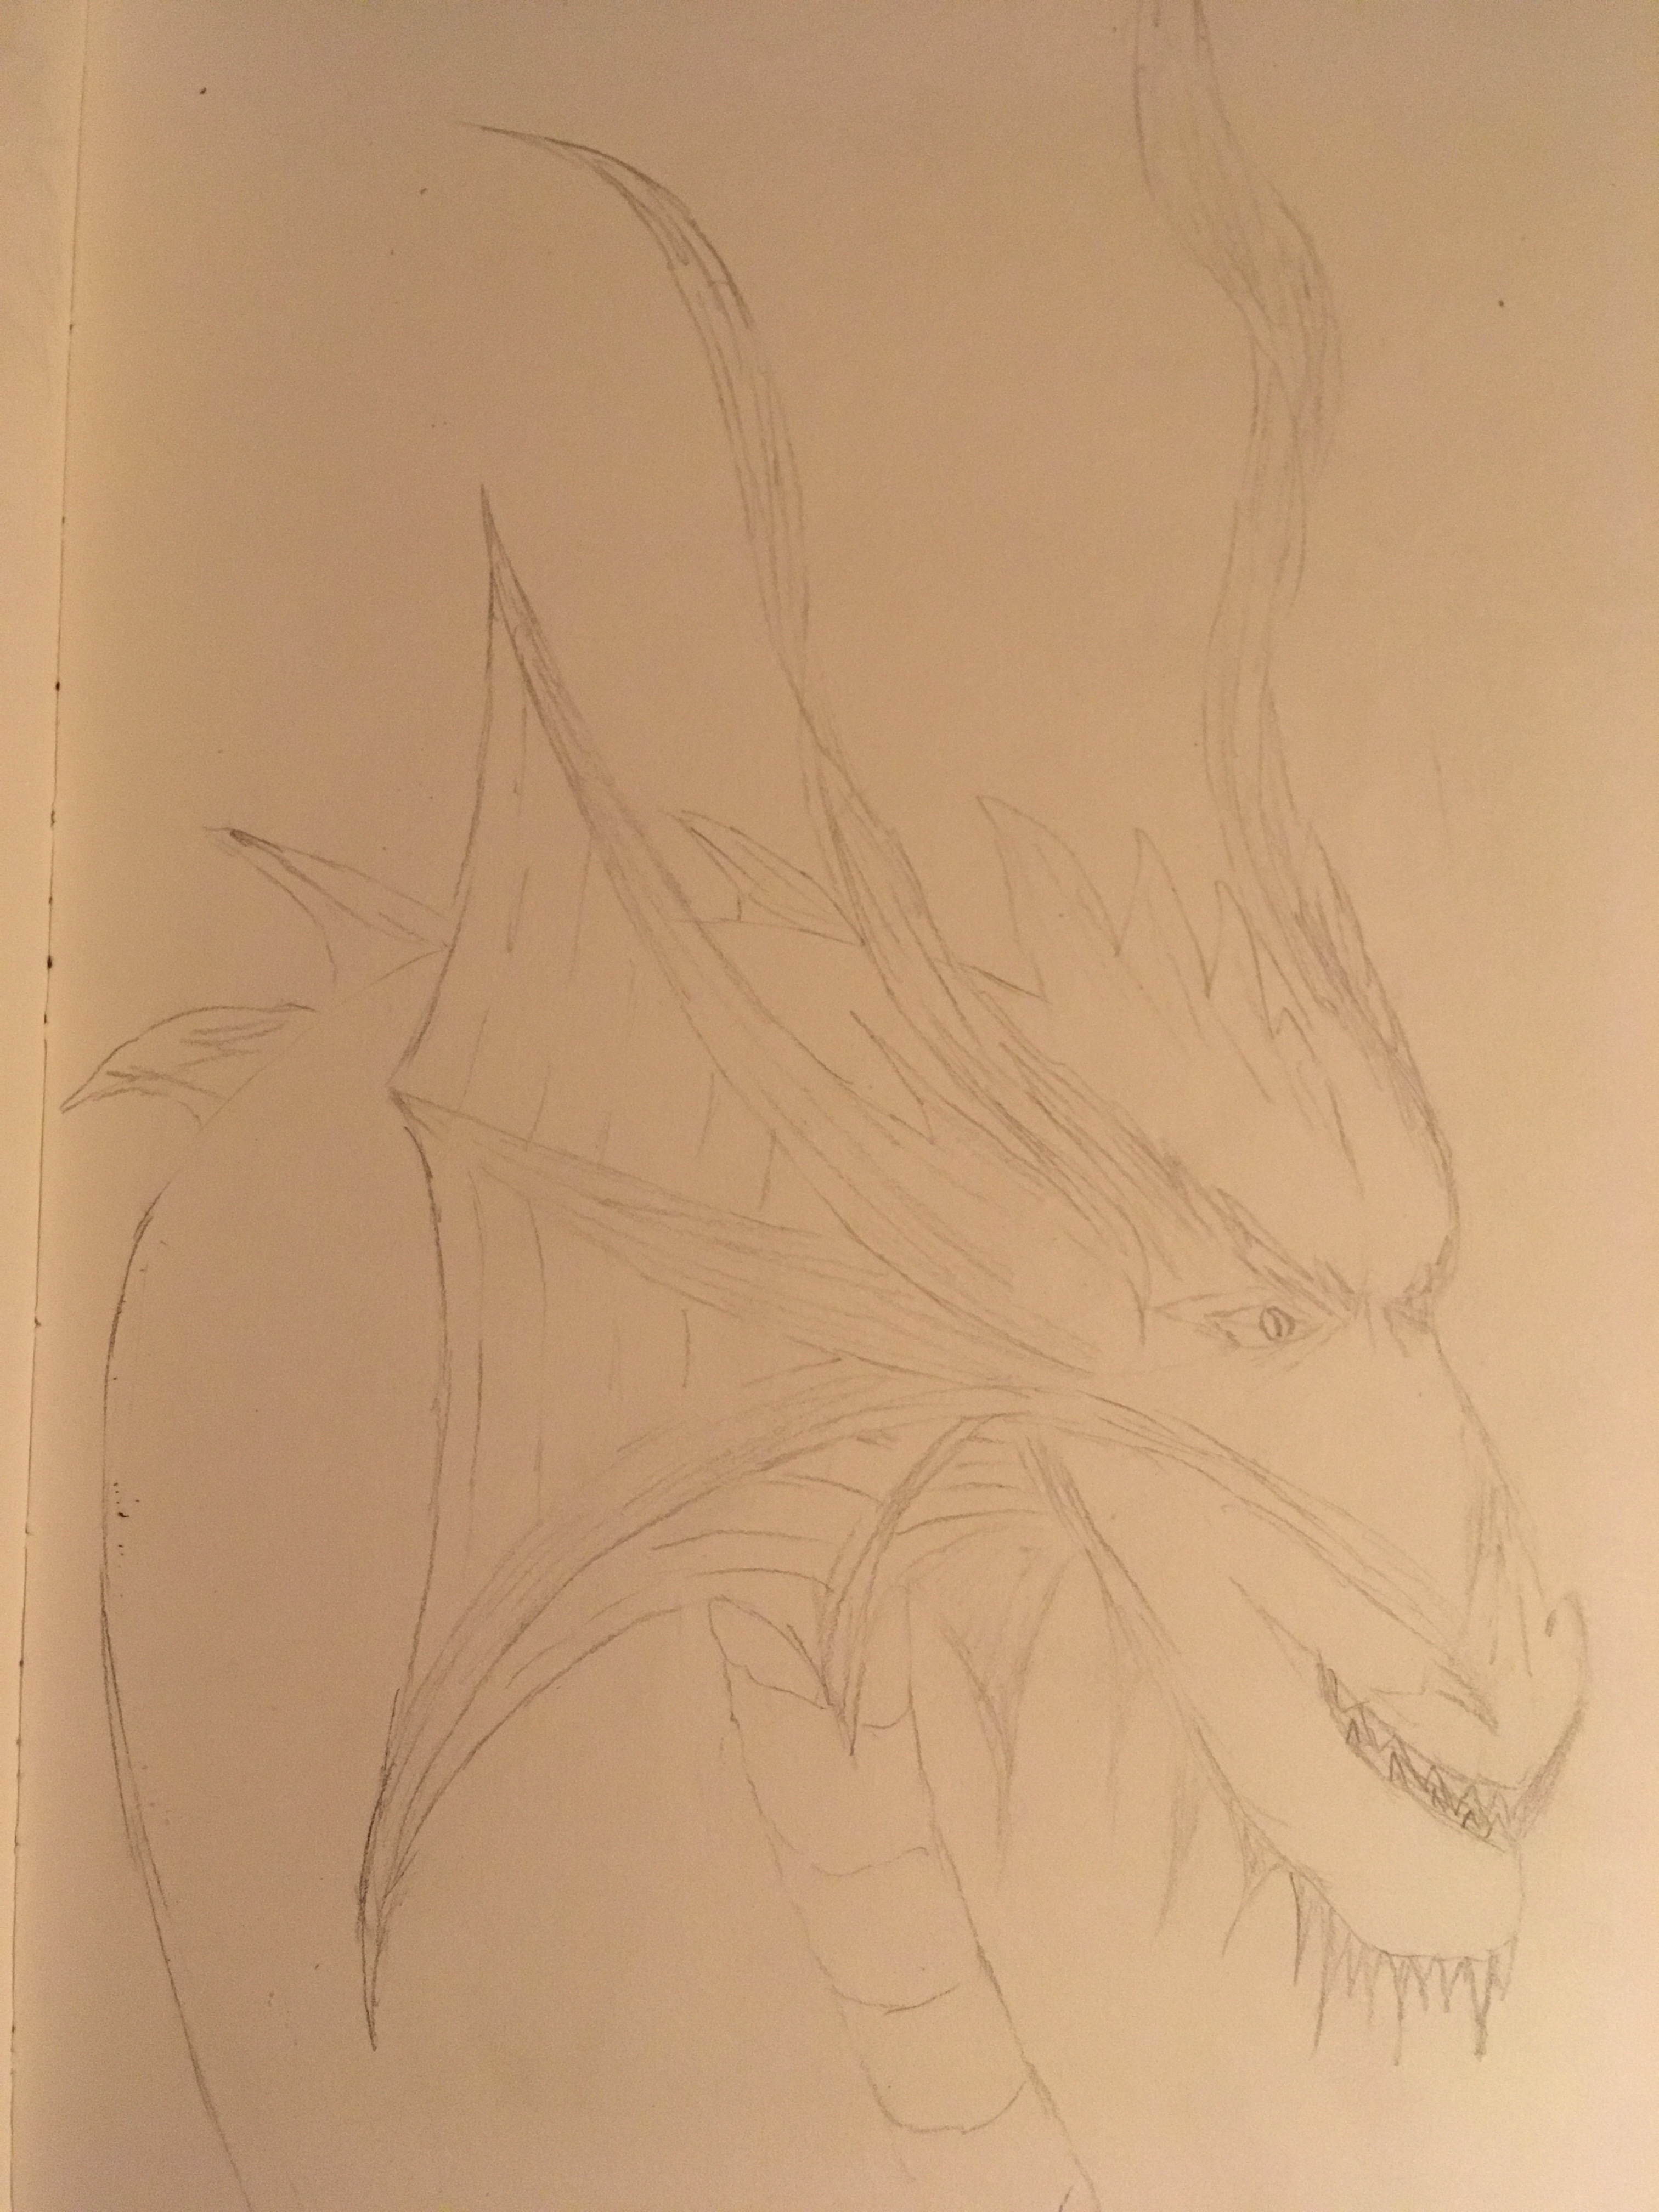 Dragon head pencil